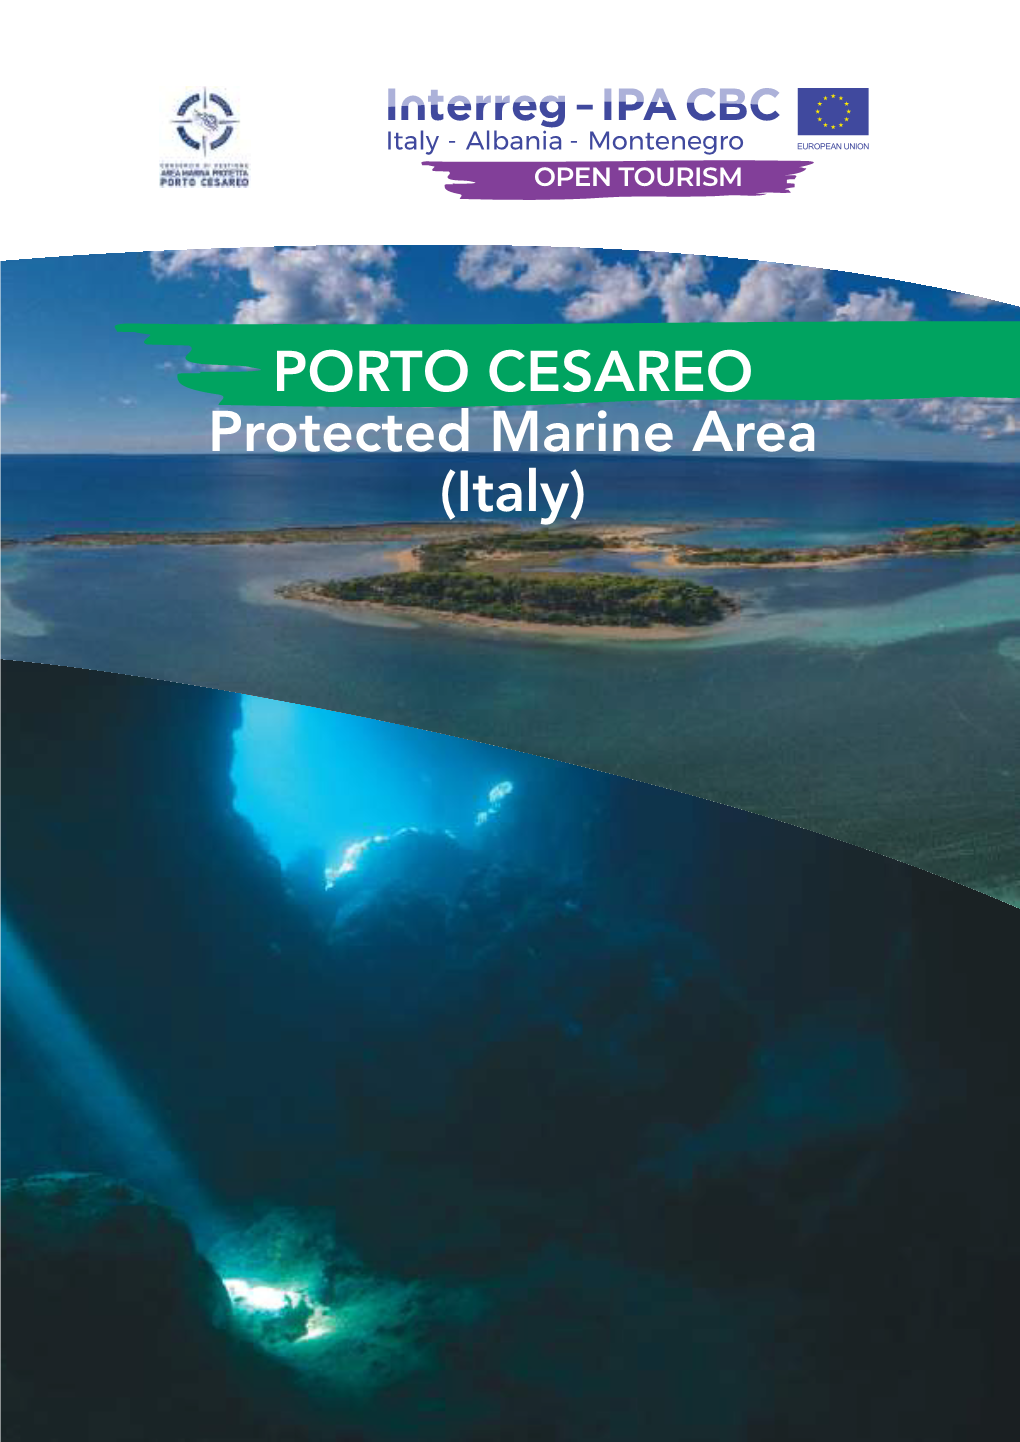 PORTO CESAREO Protected Marine Area (Italy) Mapping by PORTO CESAREO Protected Marine Area (Italy)